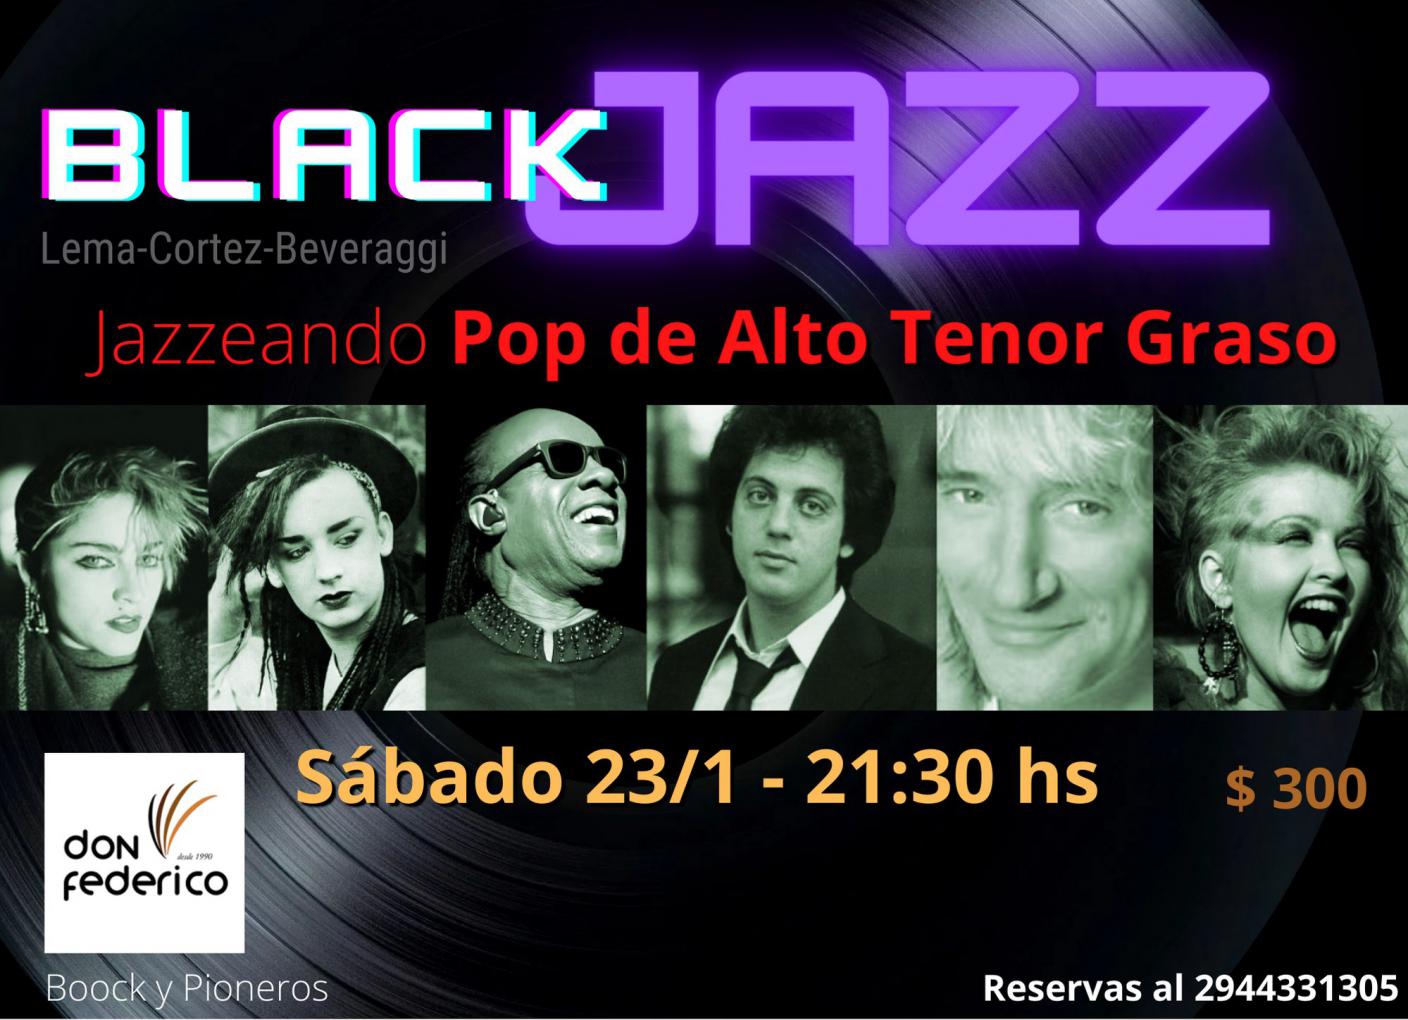 BlackJazz - Jazzeando pop de alto tenor graso